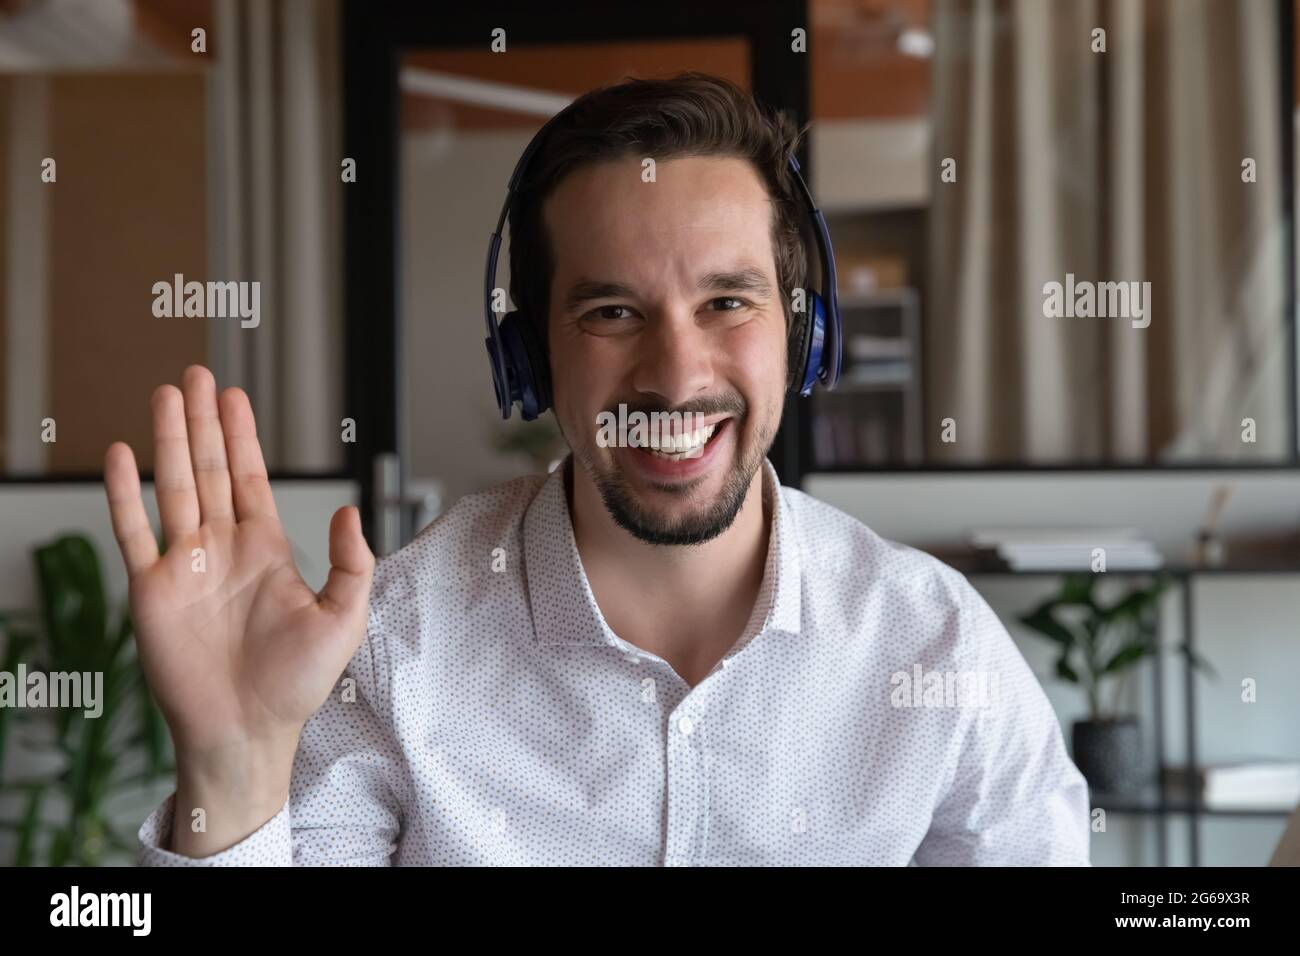 Porträt eines lächelnden Mannes in einem Kopfhörer, der die Hand schwenkt Stockfoto